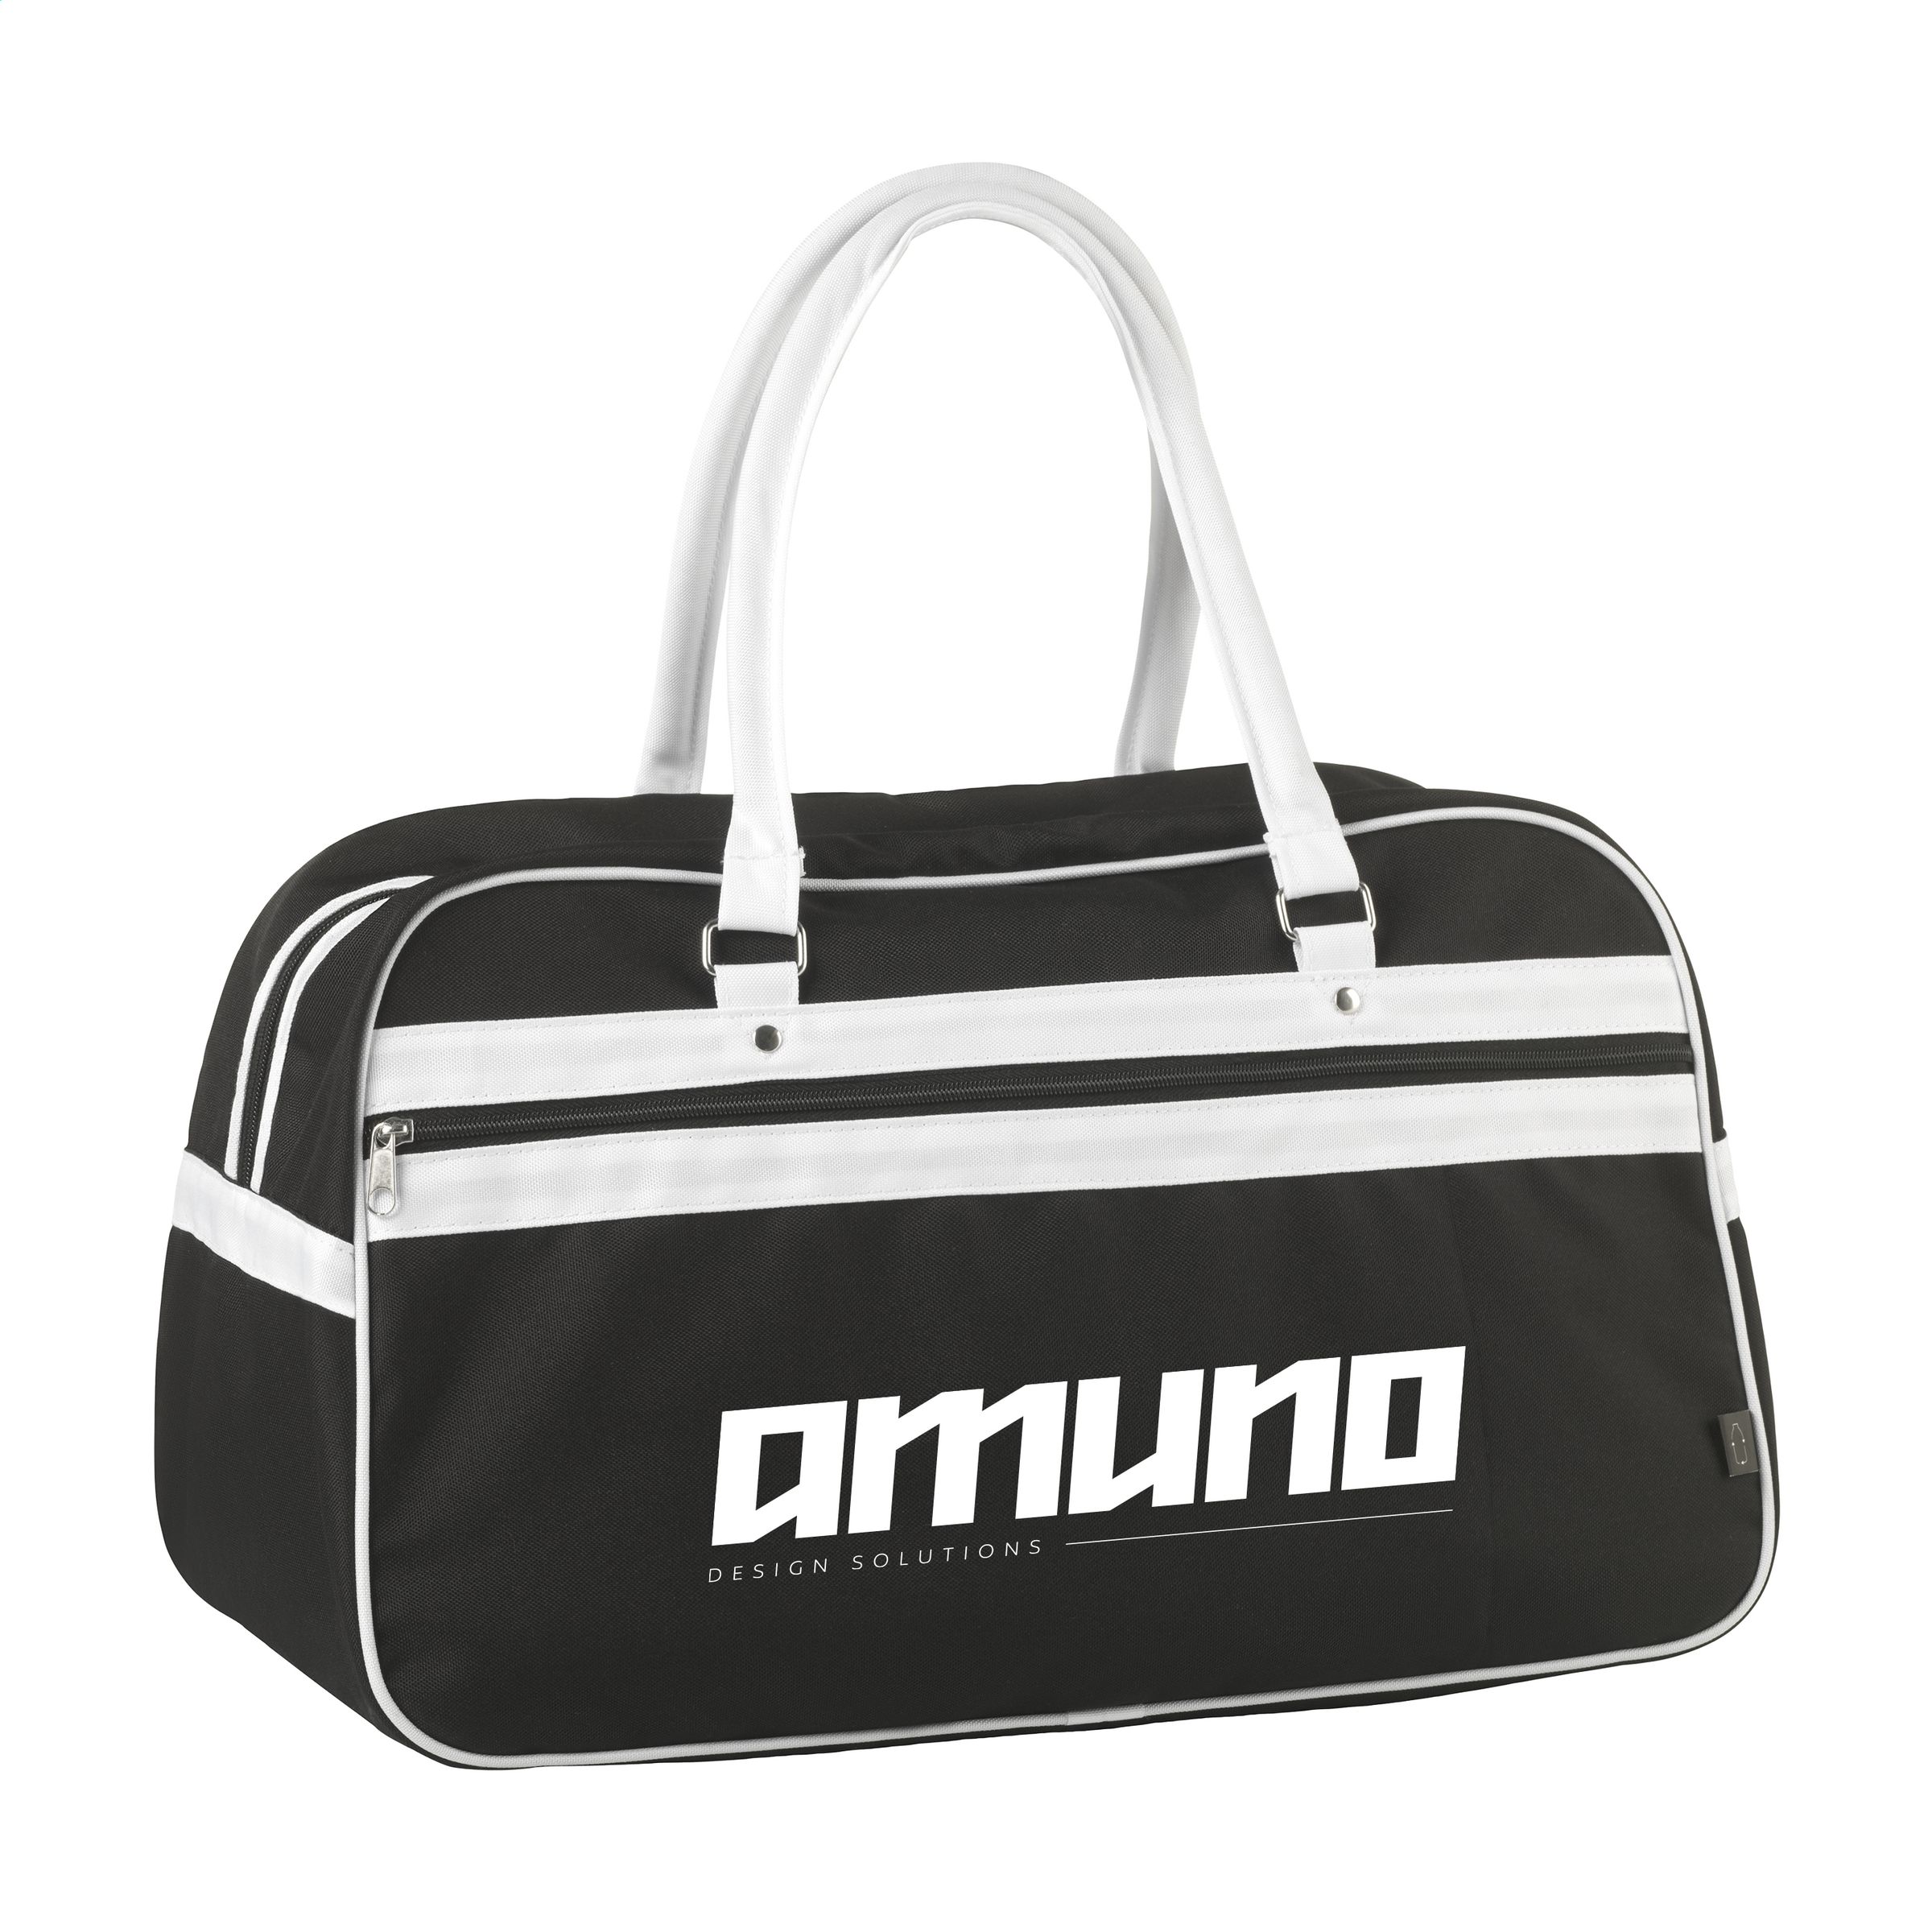 Retro Sports Bag - Bampton - Crowborough